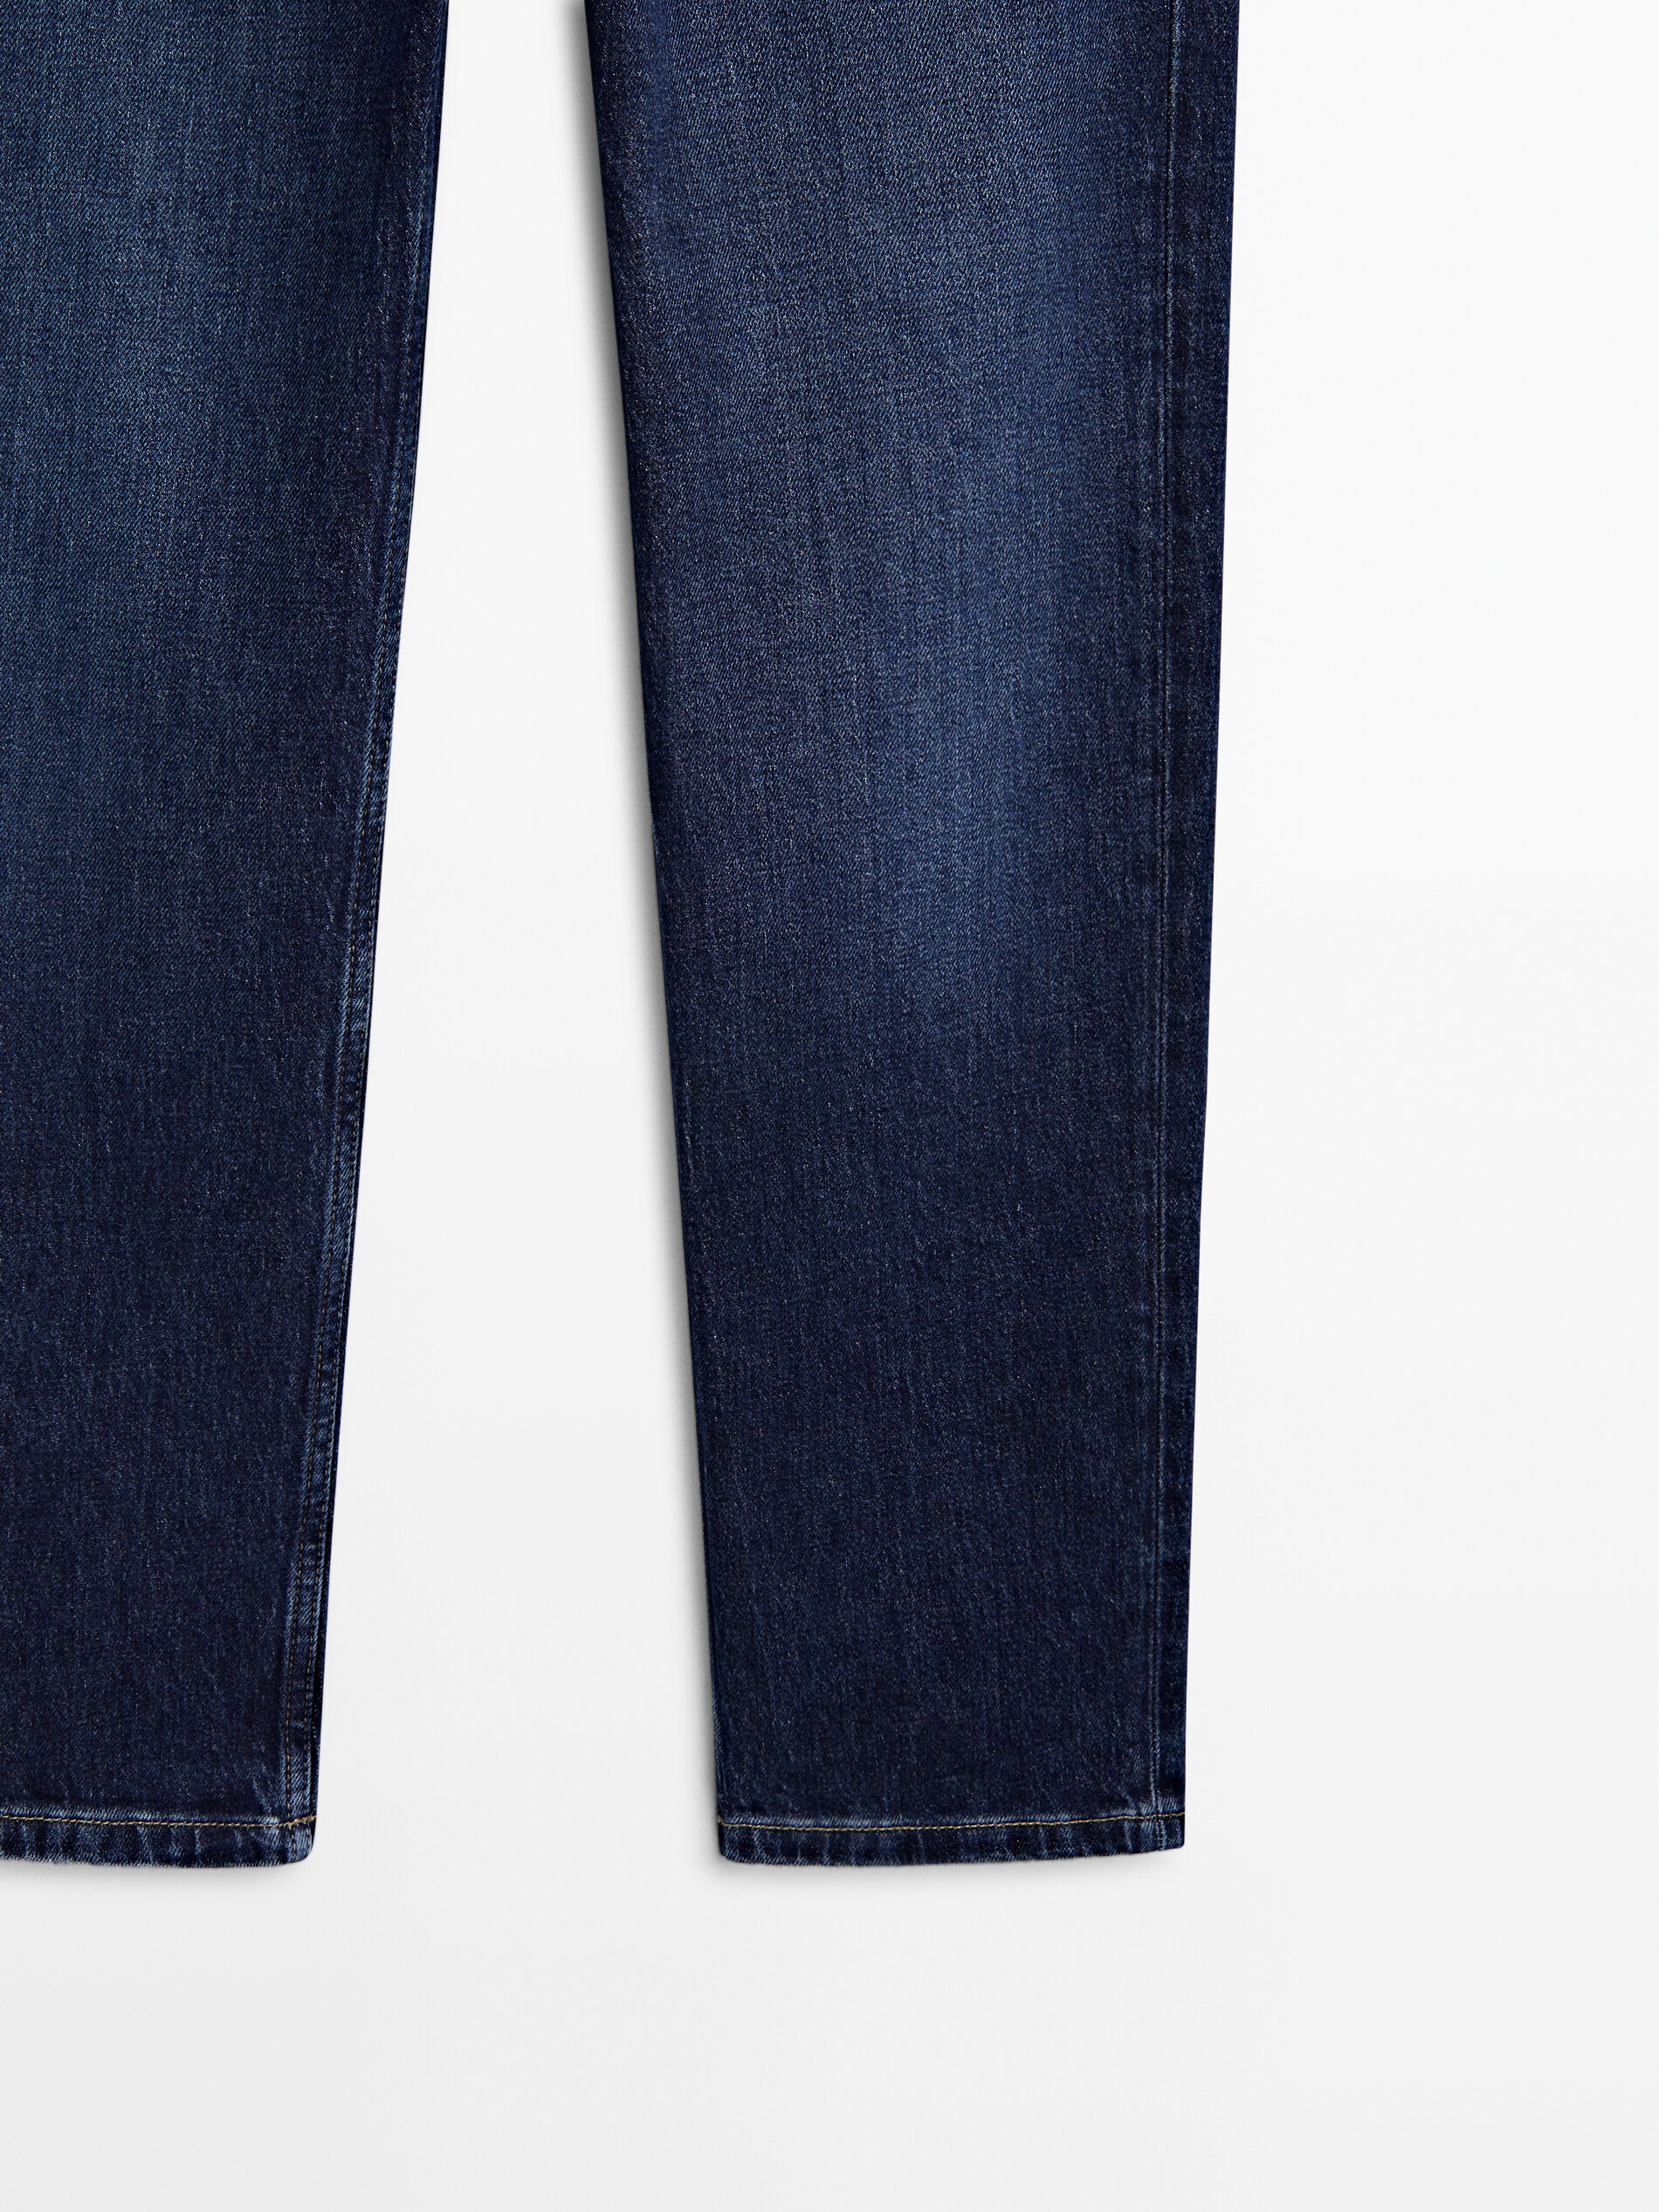 Jeans tiro medio corte recto confort